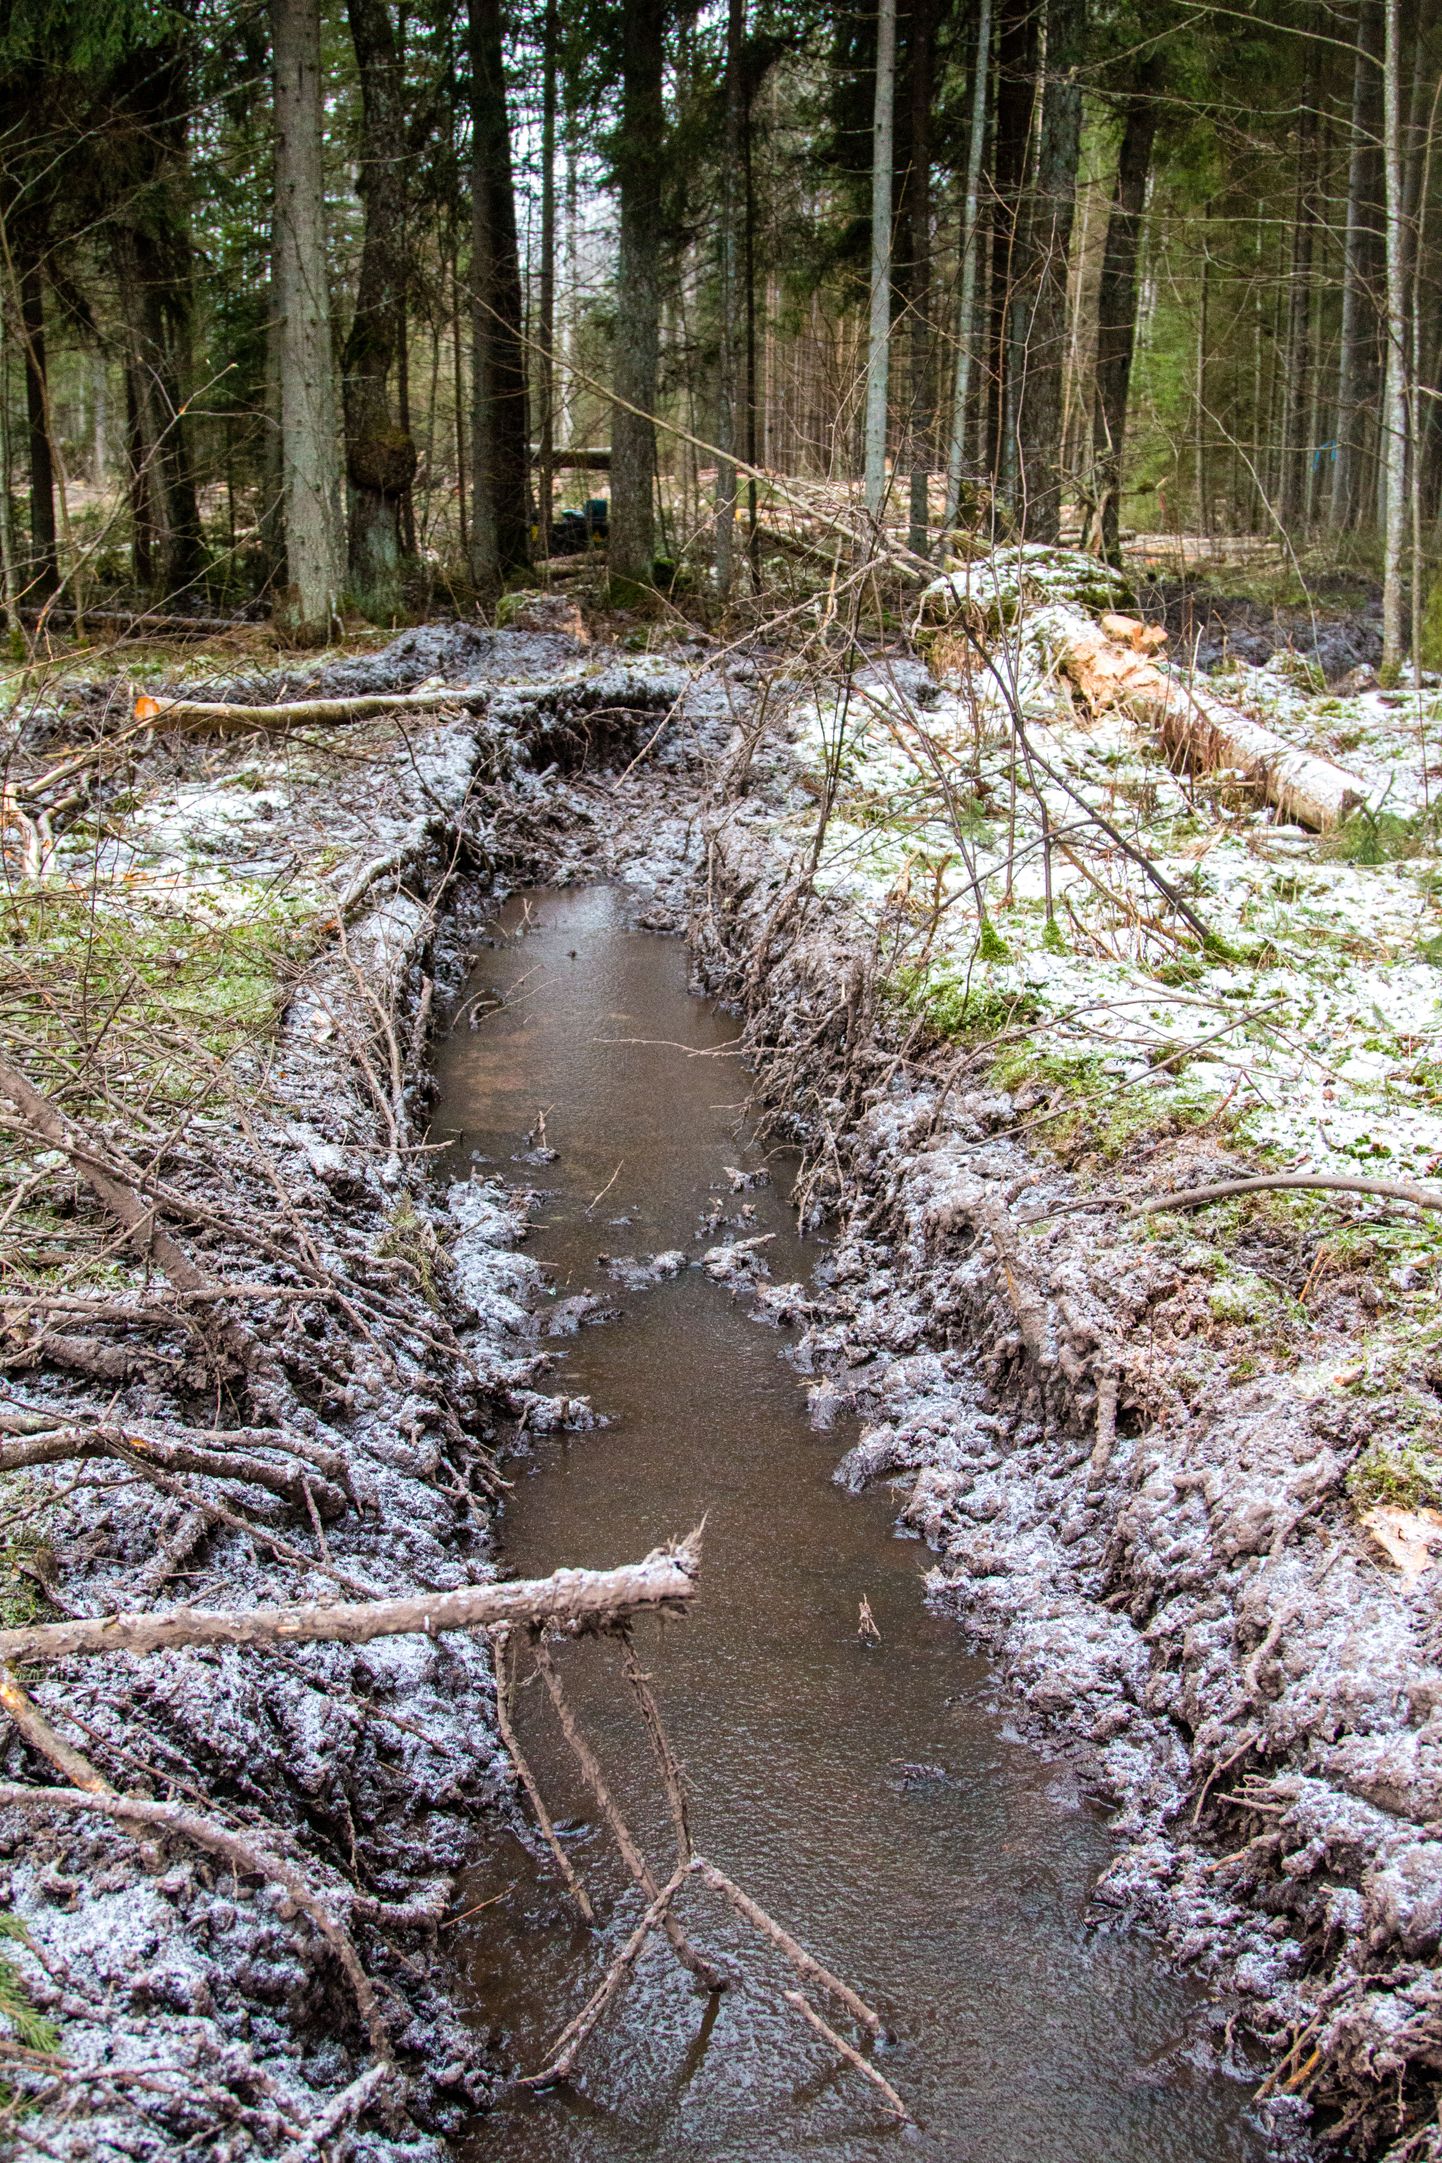 Metsa ülestöötamine ja väljavedu olid lõppenud talvel külmumata pinnase tõttu raskendatud.